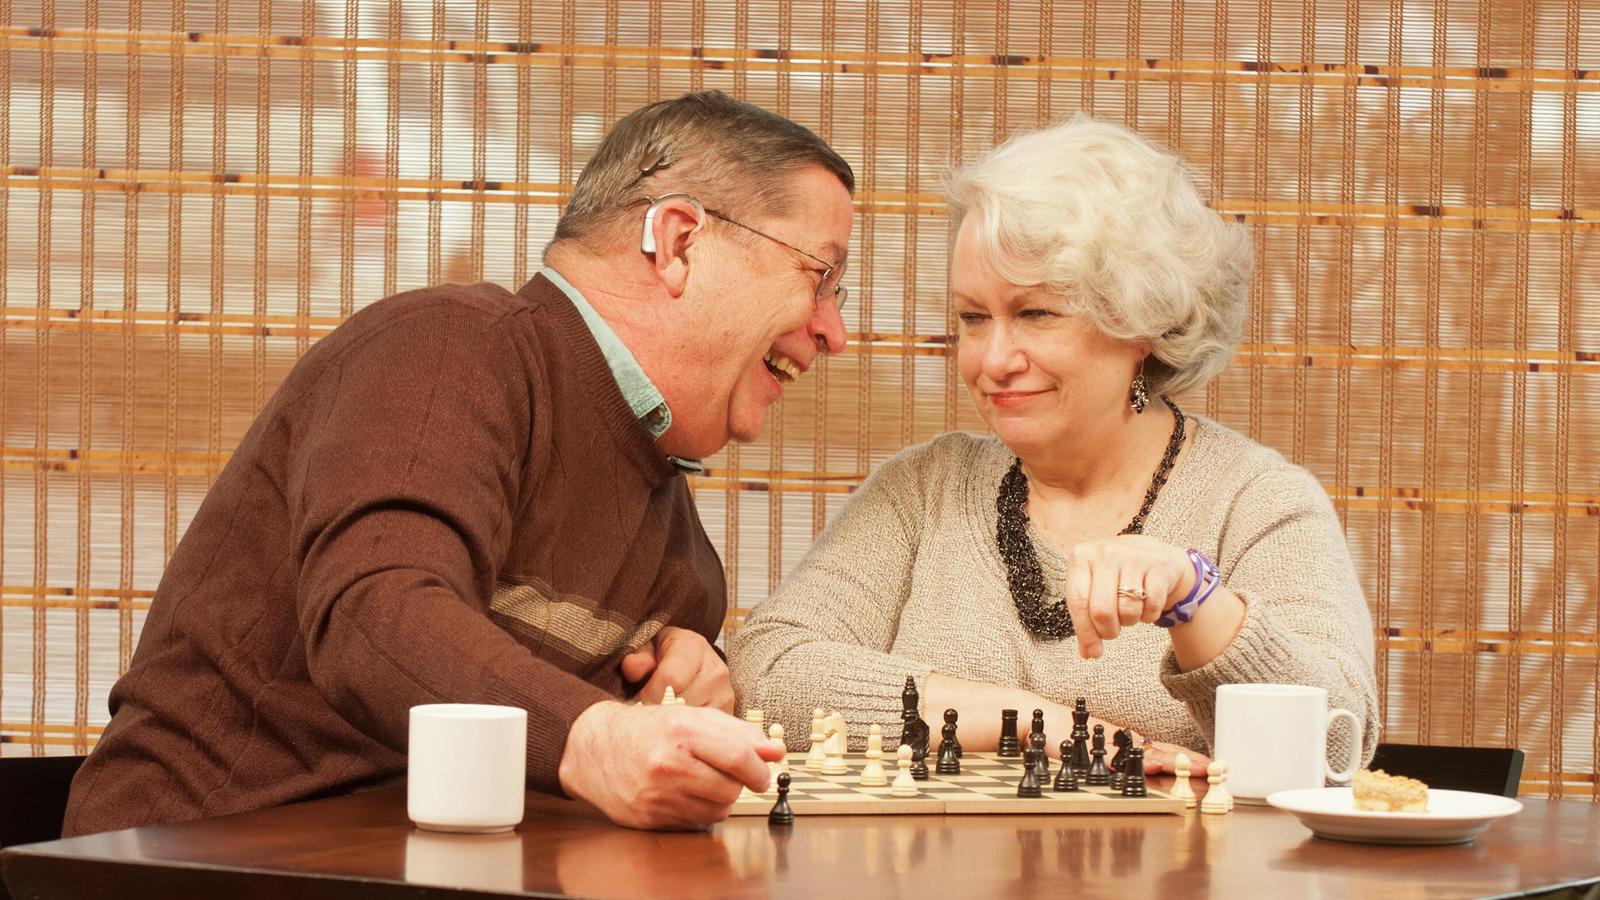 Användaren Bill och hans fru Pam har kul när de spelar schack